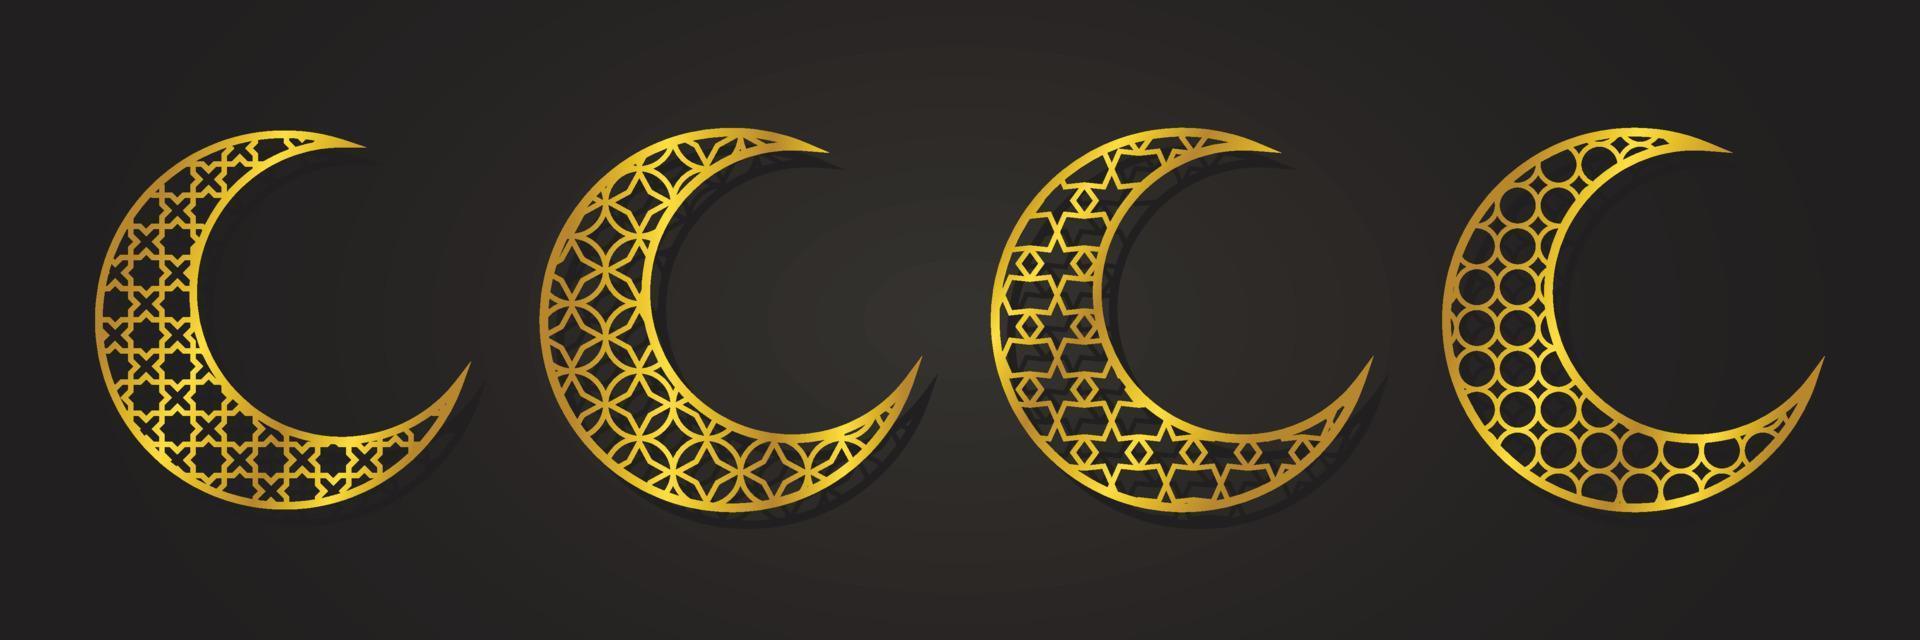 ornement de lune islamique luxe doré, motif arabesque, vecteur de conception de collection de décors